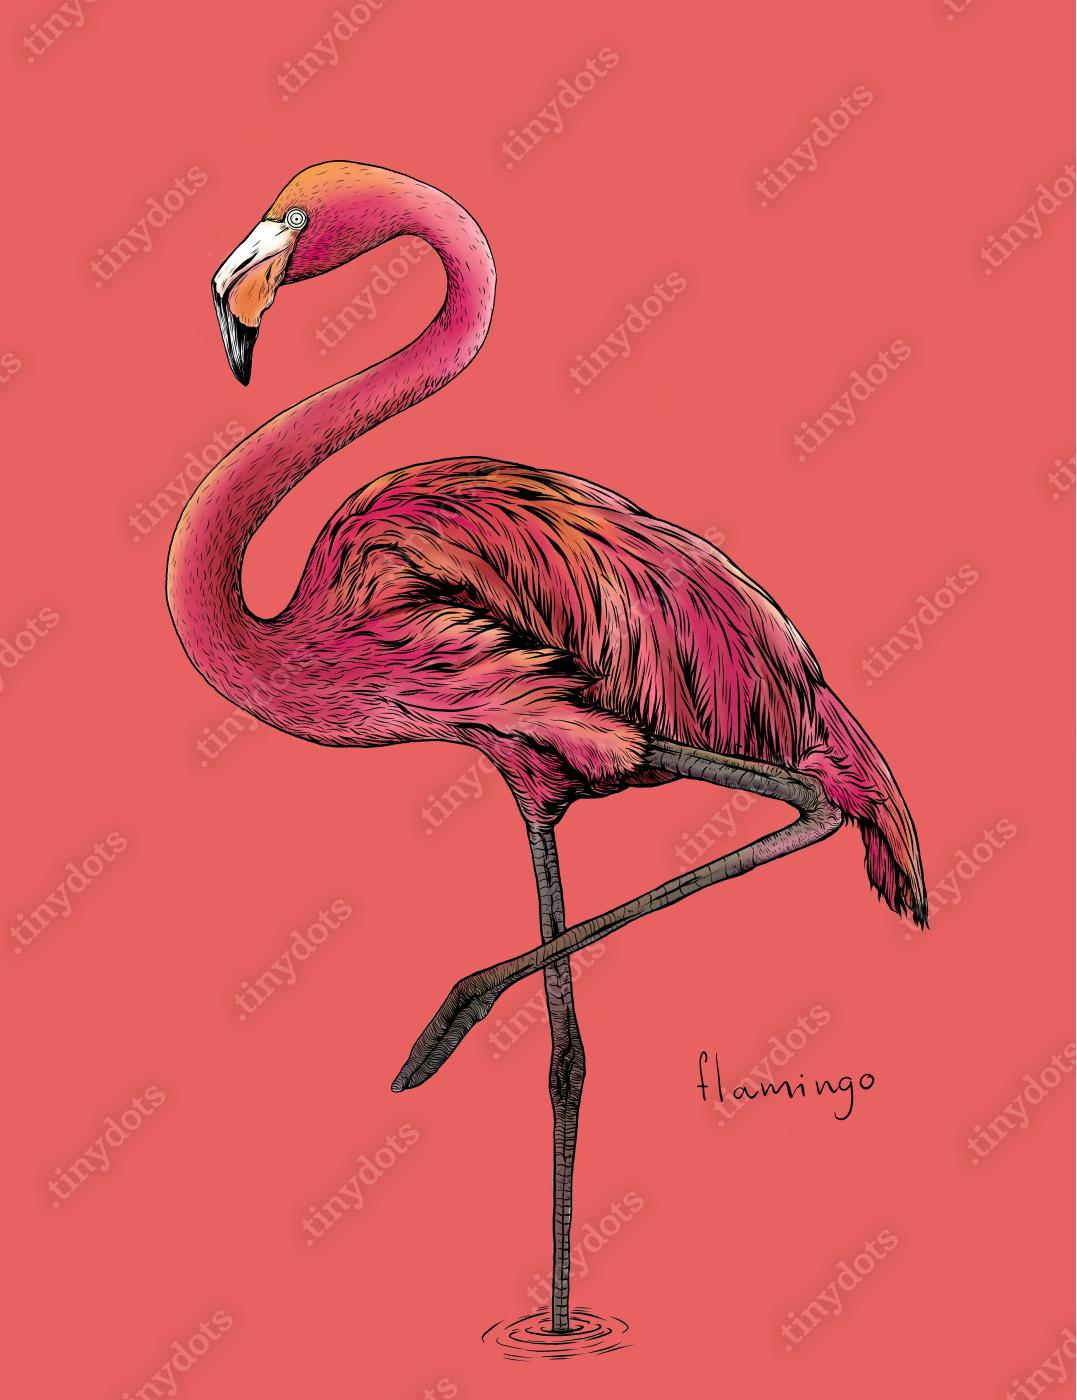 Obraz na płótnie Flamingo ptak na różowym tle, rysunek odręczny